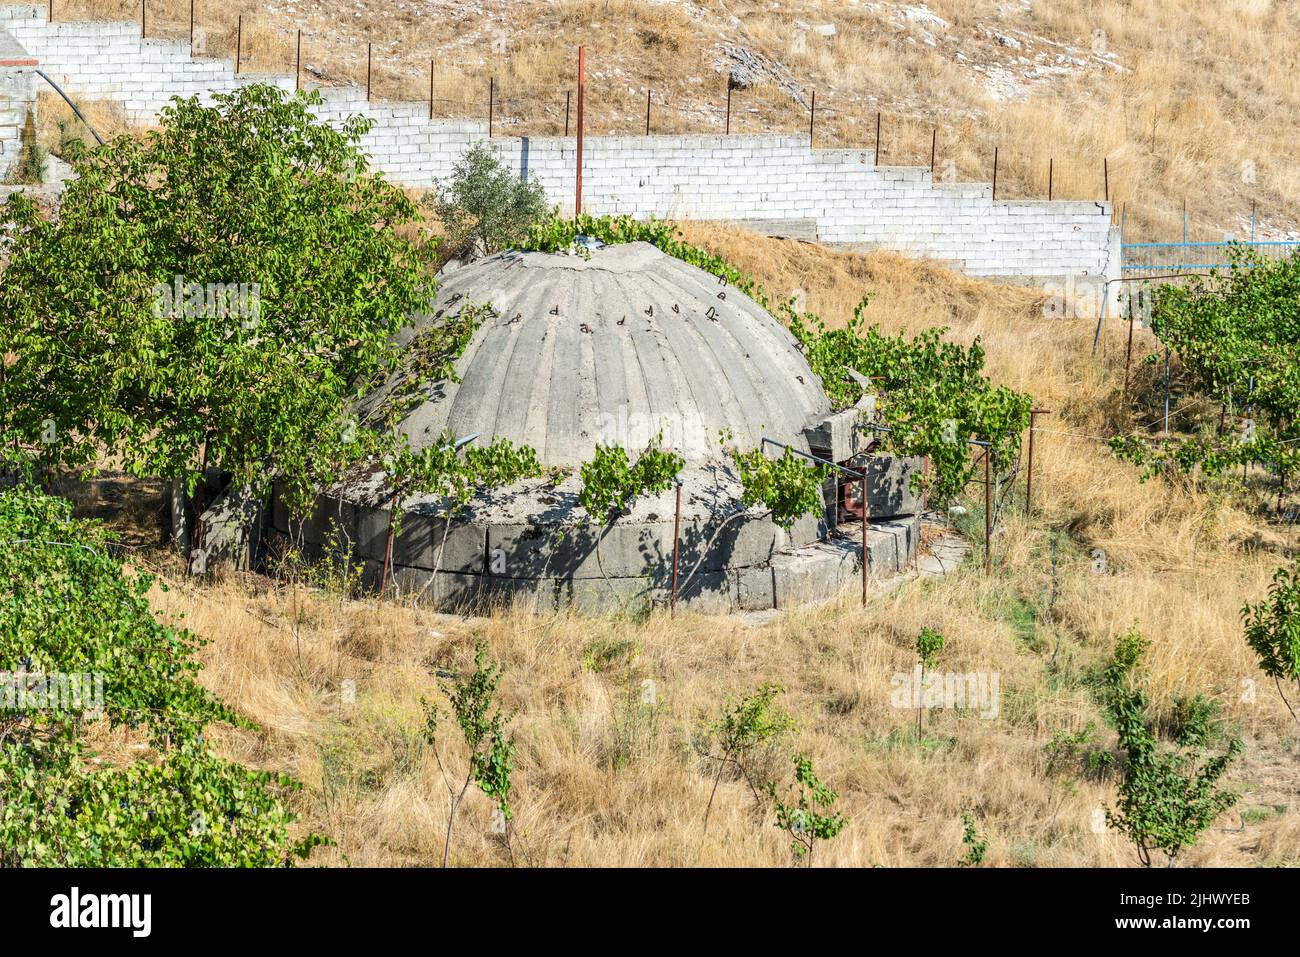 Jorgucat, Albania - 10 settembre 2021: Bunker militare concreto in Albania. I bunker furono costruiti durante la guerra fredda dal dittatore comunista w Foto Stock